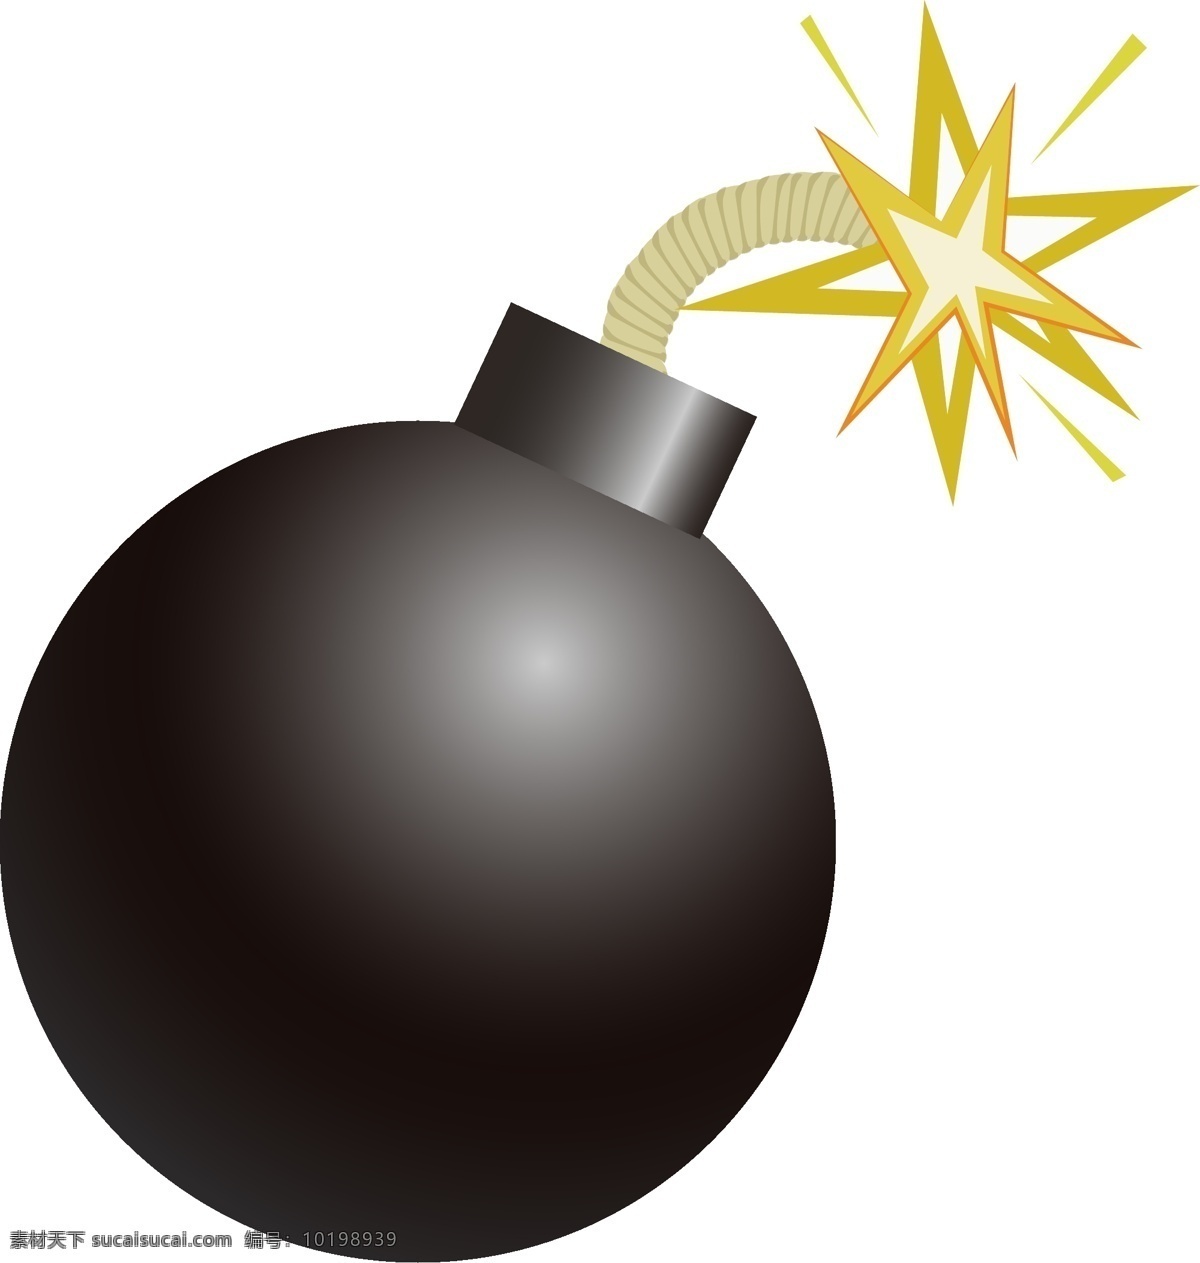 黑色 圆形 炸弹 插图 战争用品 圆形炸弹 黑色炸弹 军事用品 武器装备 点燃的炸弹 威力炸弹 图案装饰